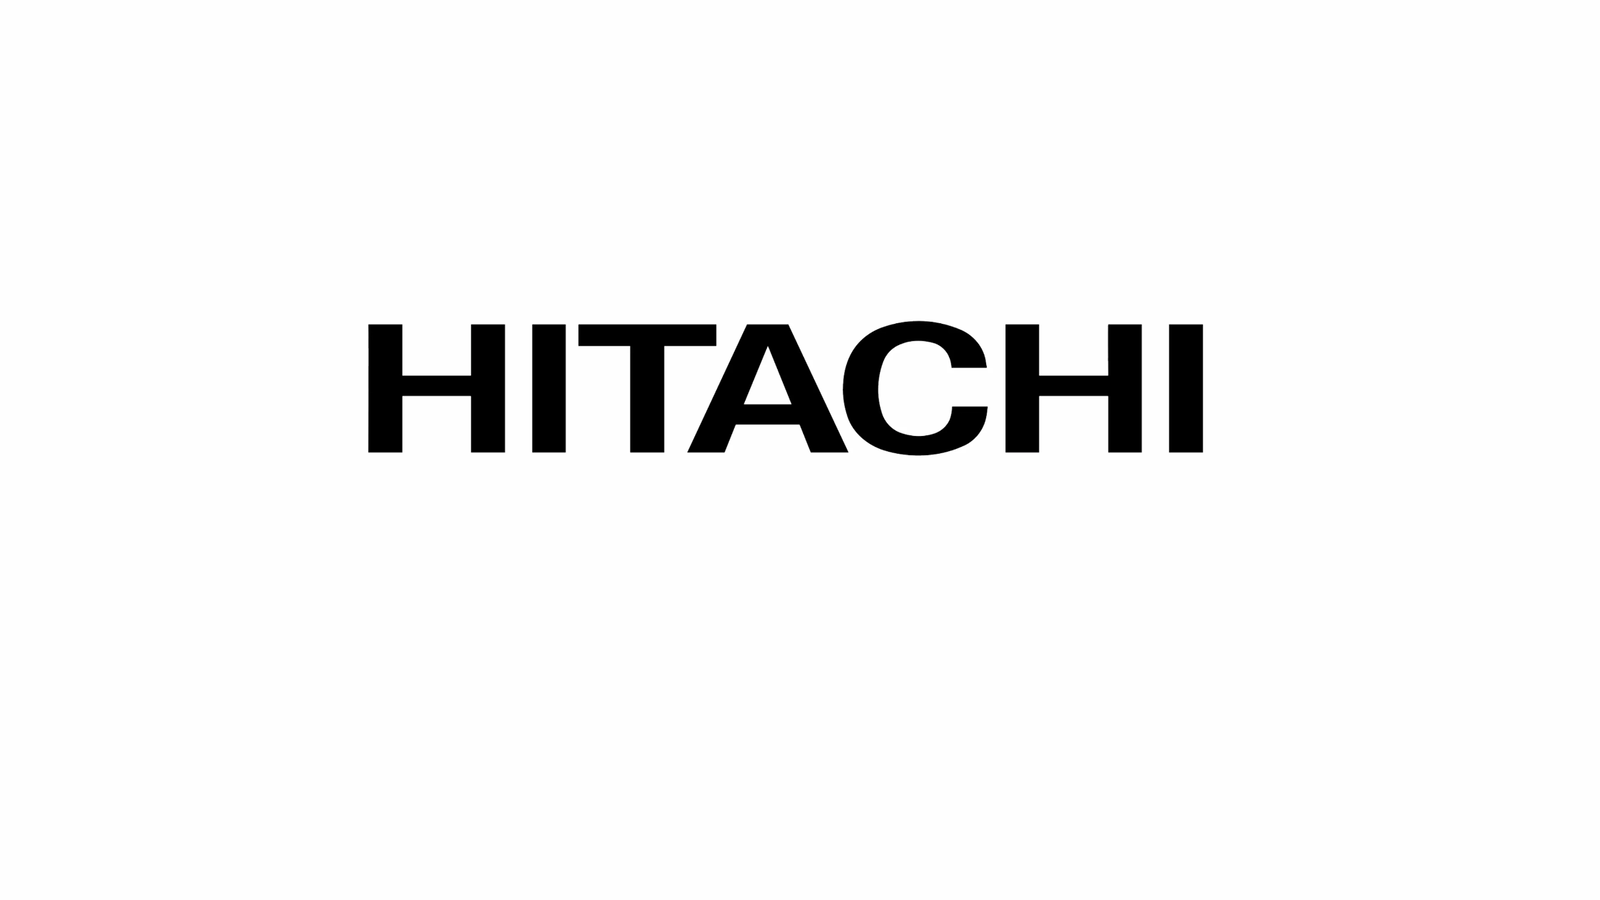 HITACHI 42PMA500 MATRIX